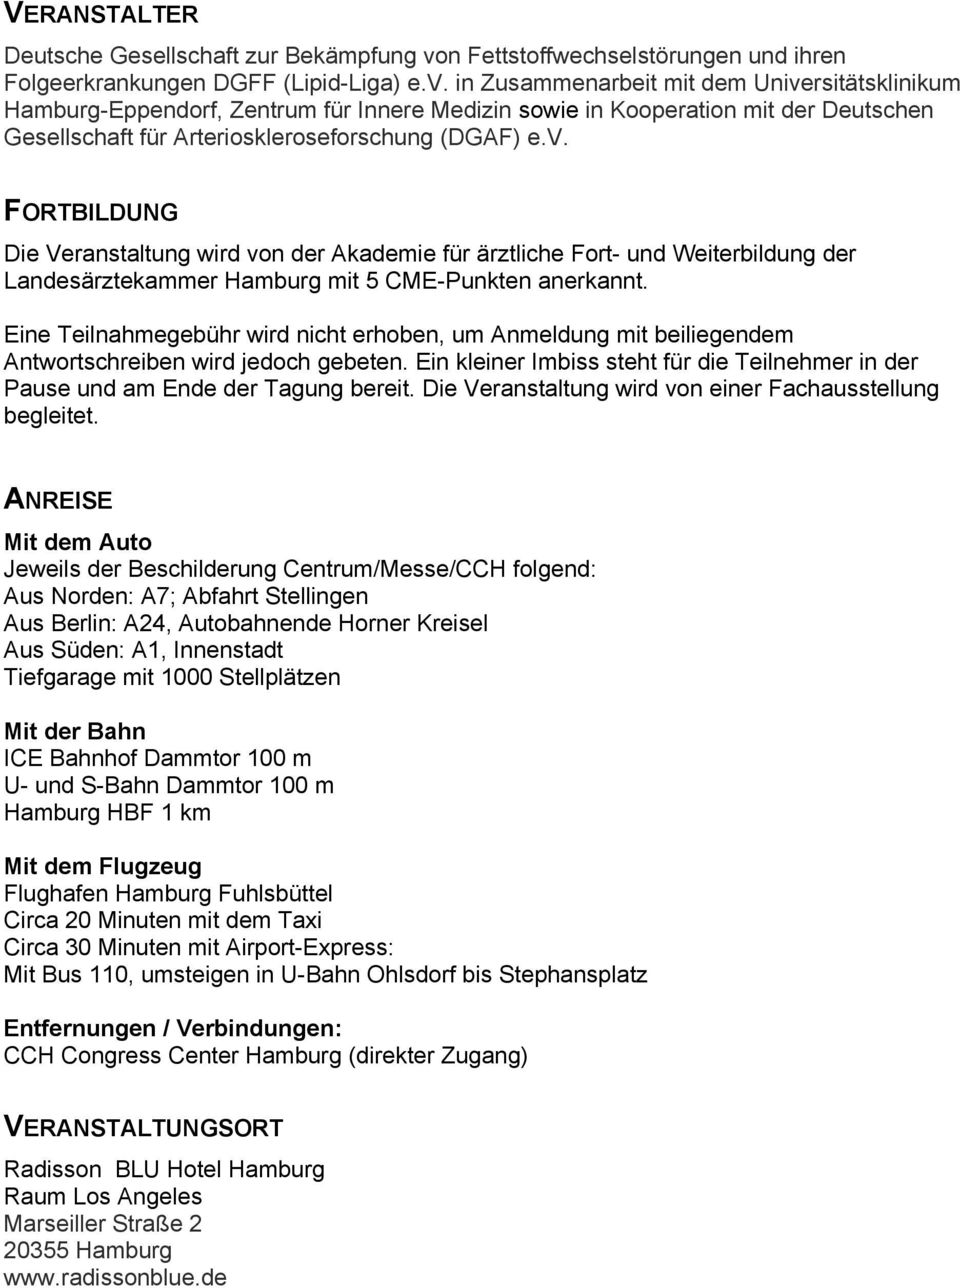 in Zusammenarbeit mit dem Universitätsklinikum Hamburg-Eppendorf, Zentrum für Innere Medizin sowie in Kooperation mit der Deutschen Gesellschaft für Arterioskleroseforschung (DGAF) e.v. FORTBILDUNG Die Veranstaltung wird von der Akademie für ärztliche Fort- und Weiterbildung der Landesärztekammer Hamburg mit 5 CME-Punkten anerkannt.